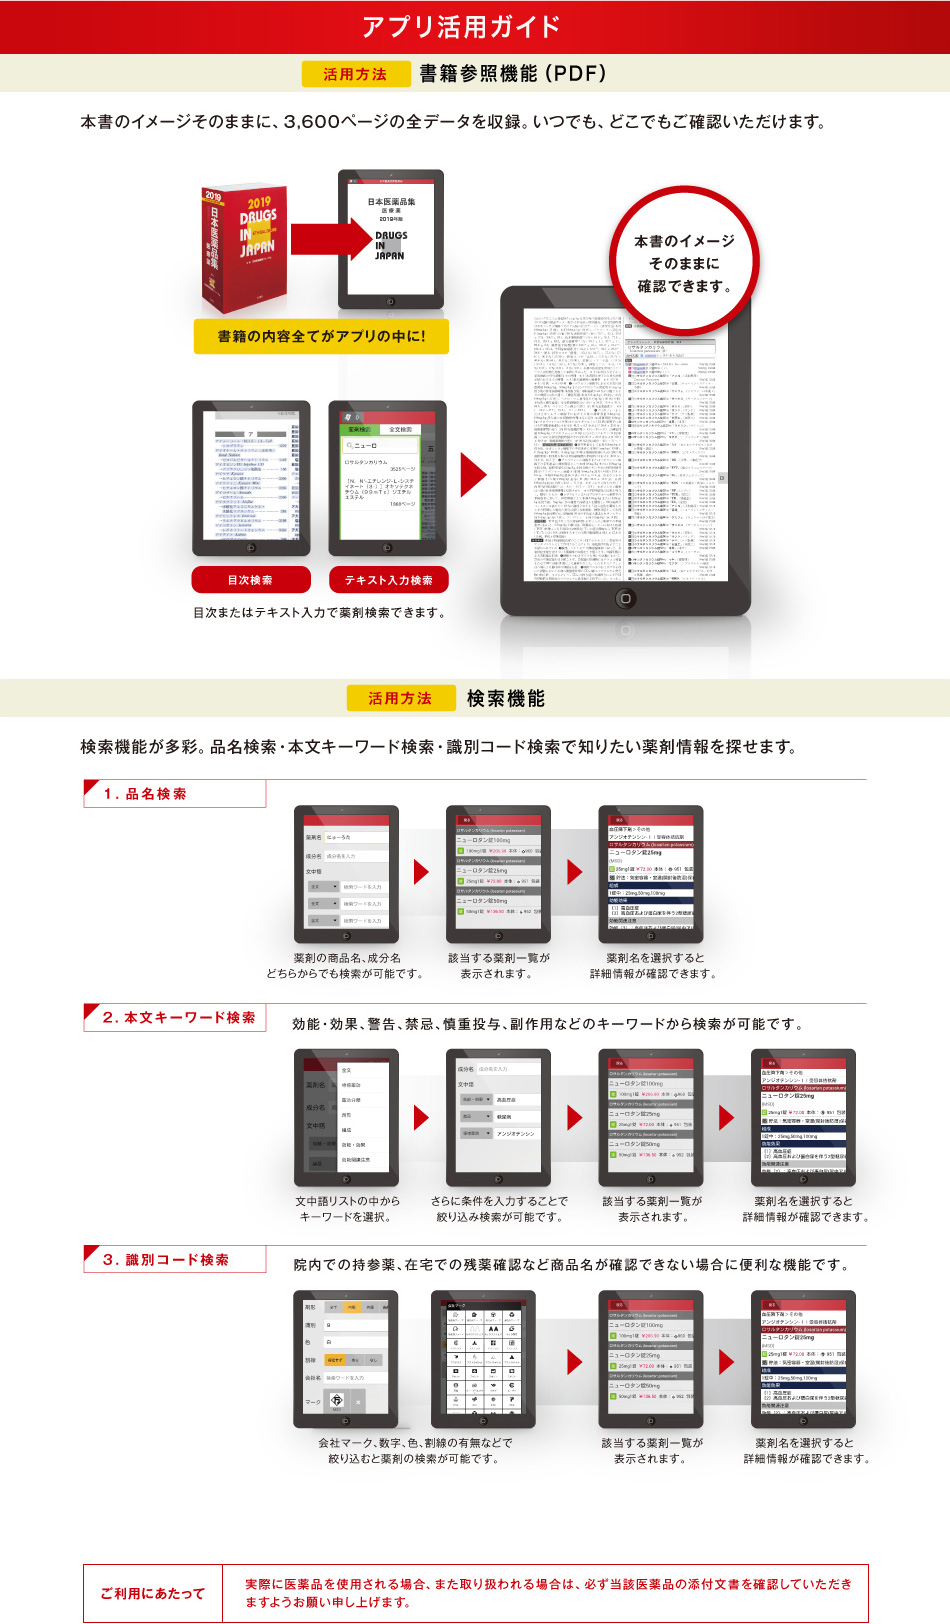 医薬品情報書籍の決定版！日本医薬品集 医療薬 2015 アプリがついてます。本書のイメージをそのまま いつでもどこへでも持ち運べます